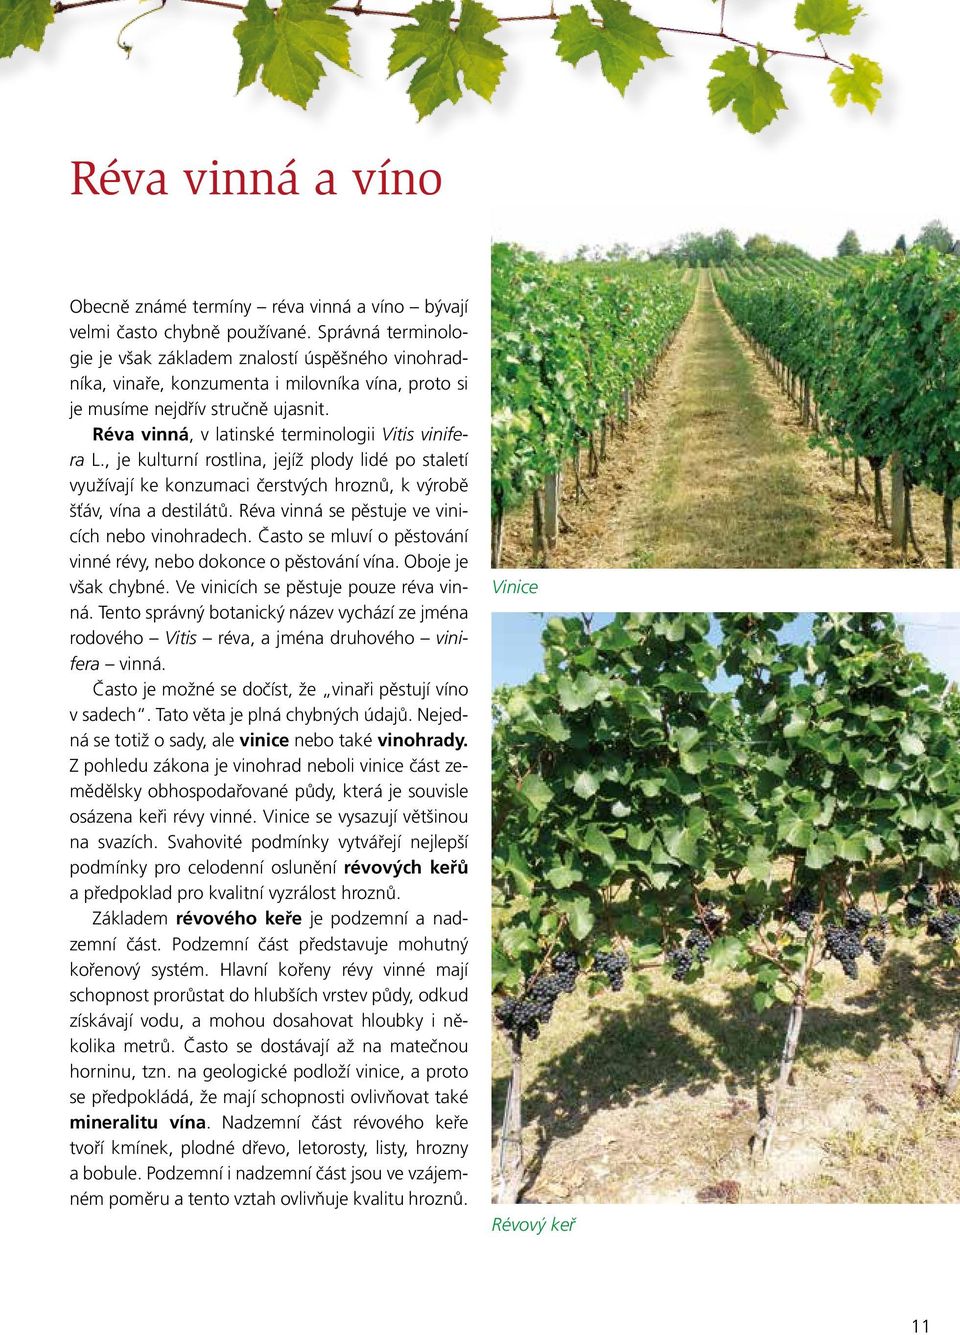 Réva vinná, v latinské terminologii Vitis vinifera L., je kulturní rostlina, jejíž plody lidé po staletí využívají ke konzumaci čerstvých hroznů, k výrobě šťáv, vína a destilátů.